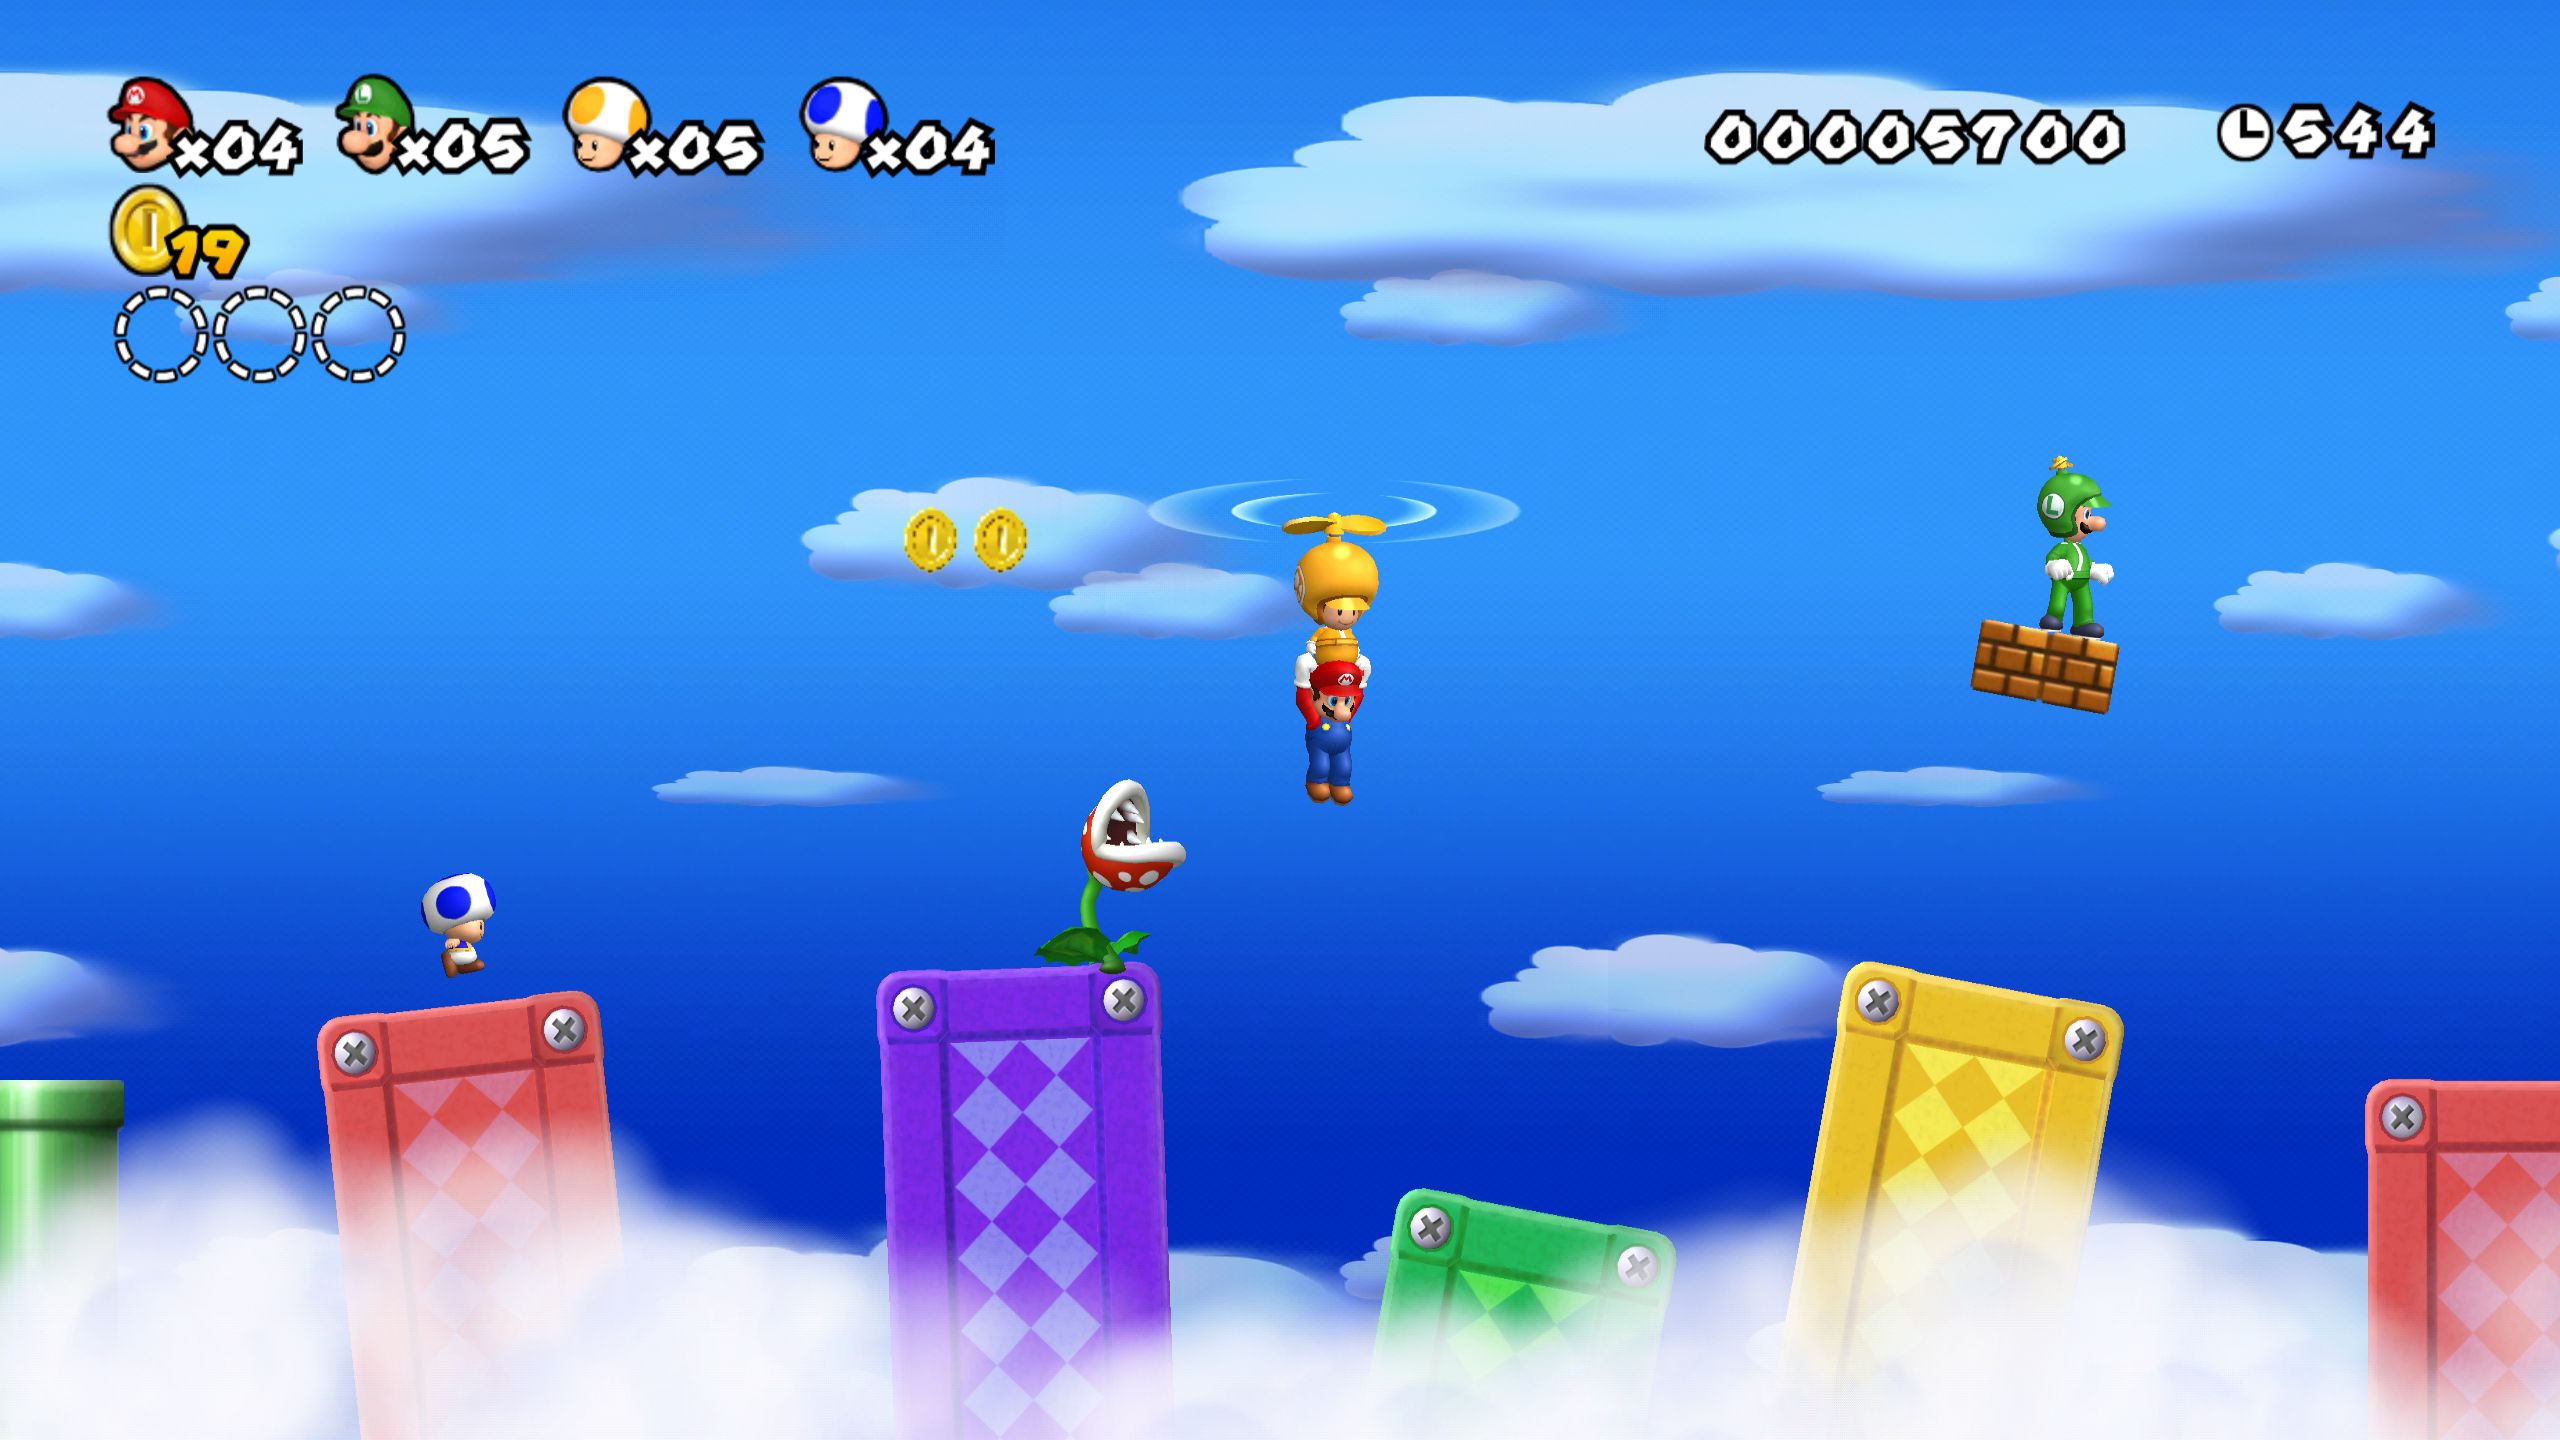 Slapen En team Raak verstrikt New Super Mario Bros Wii is out now on Wii U